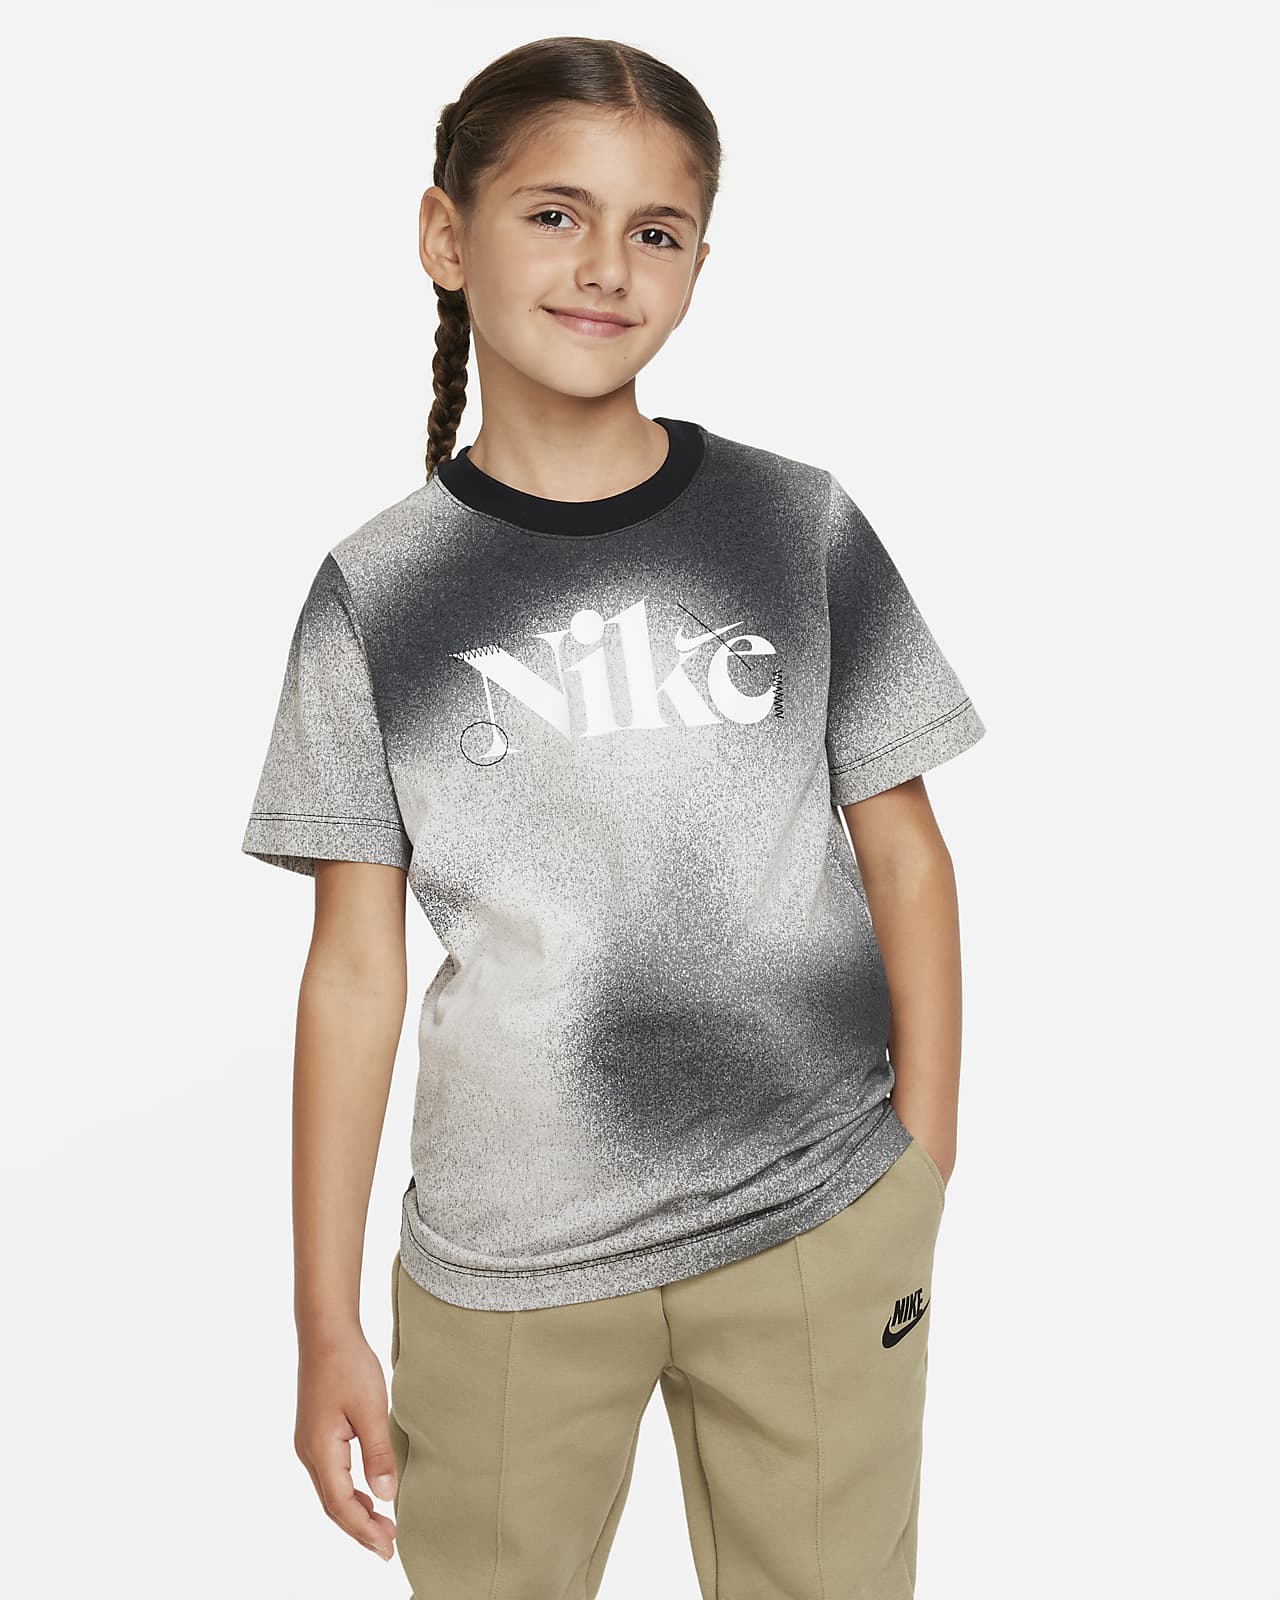 Basketball Trophy | Kids T-Shirt